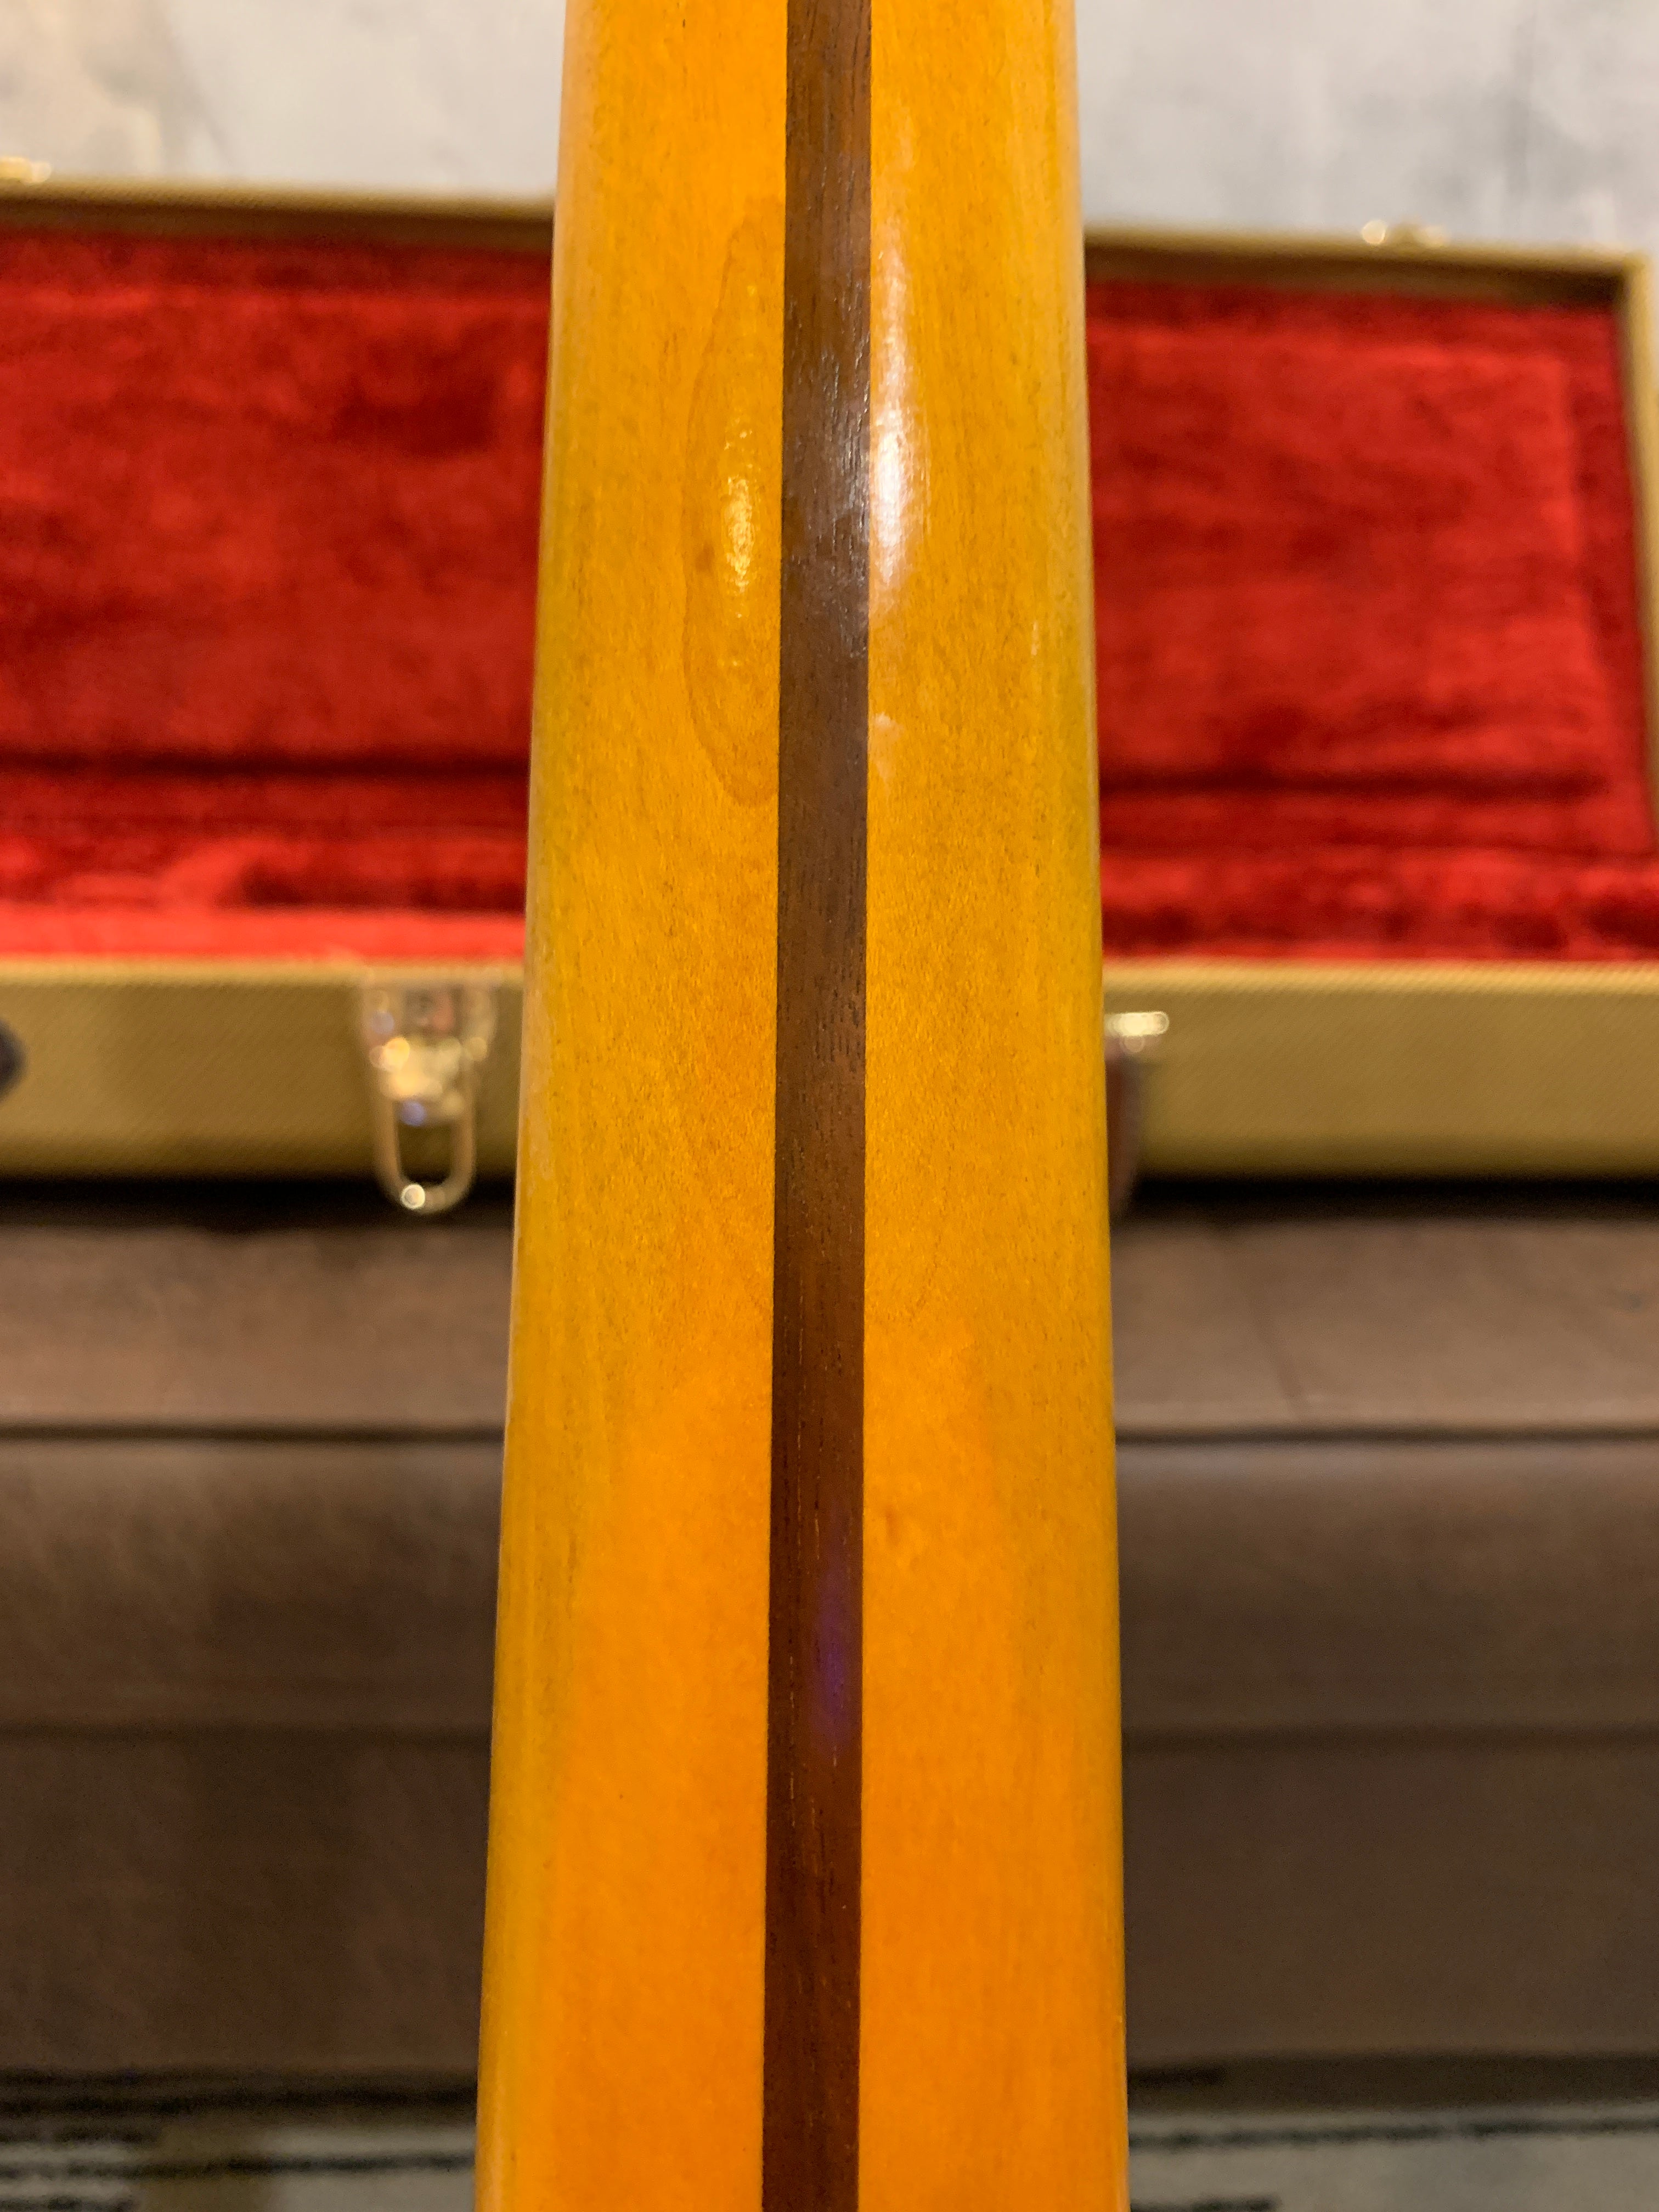 GLAS Custom Black Relic 61’ Stratocaster 7.4LB